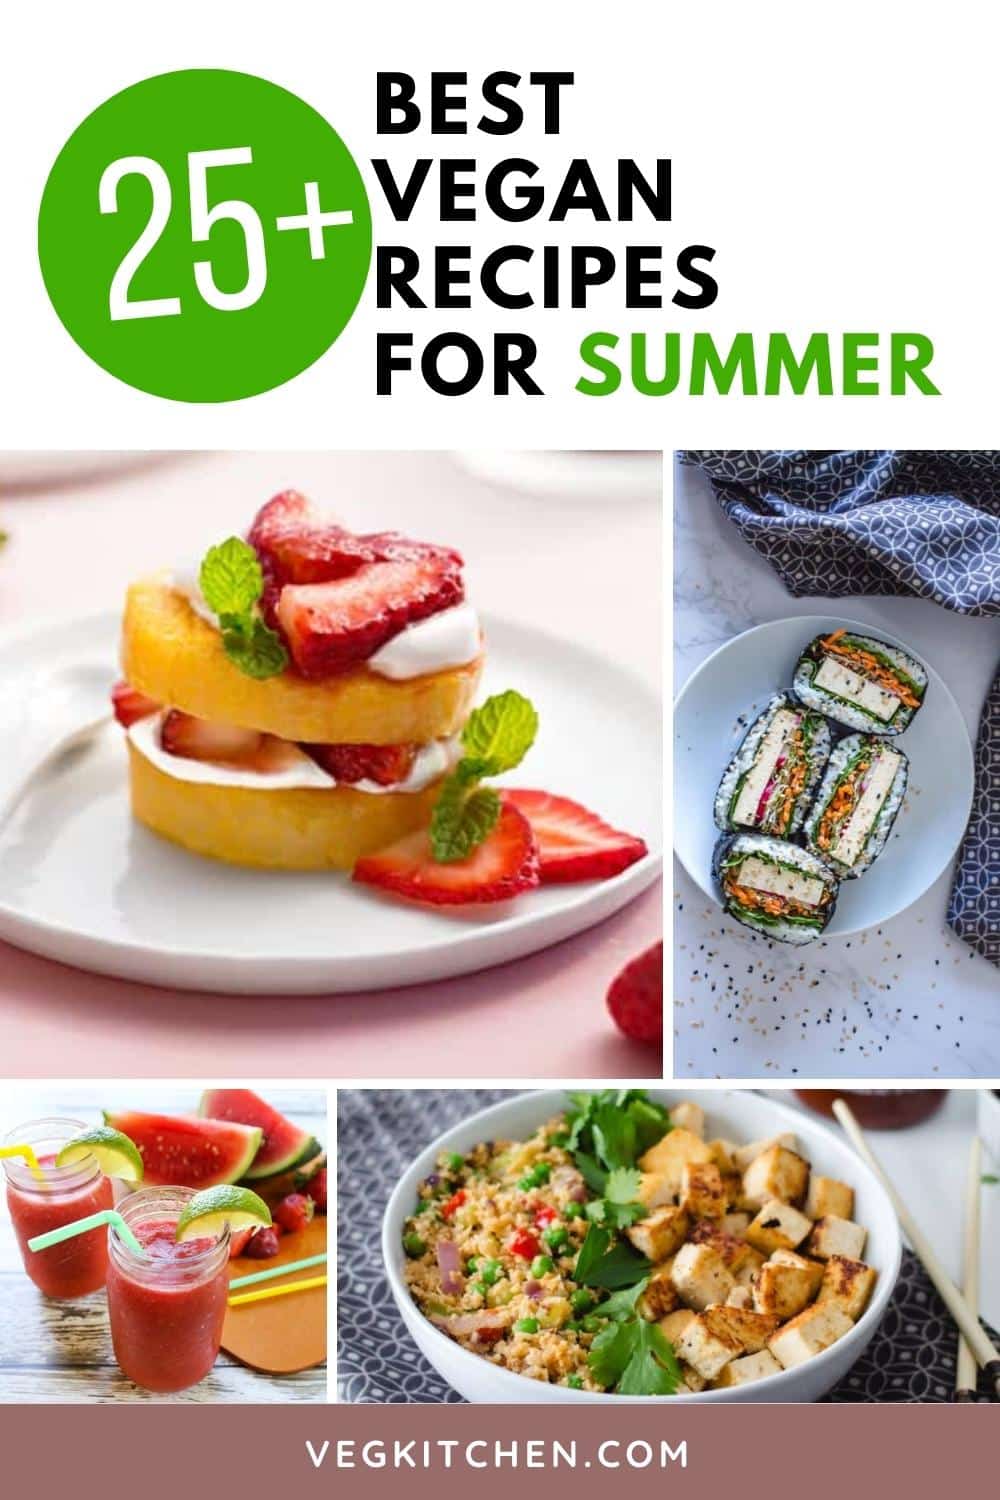 25+ Best Vegan Recipes For Summer - Vegan recipes by VegKitchen